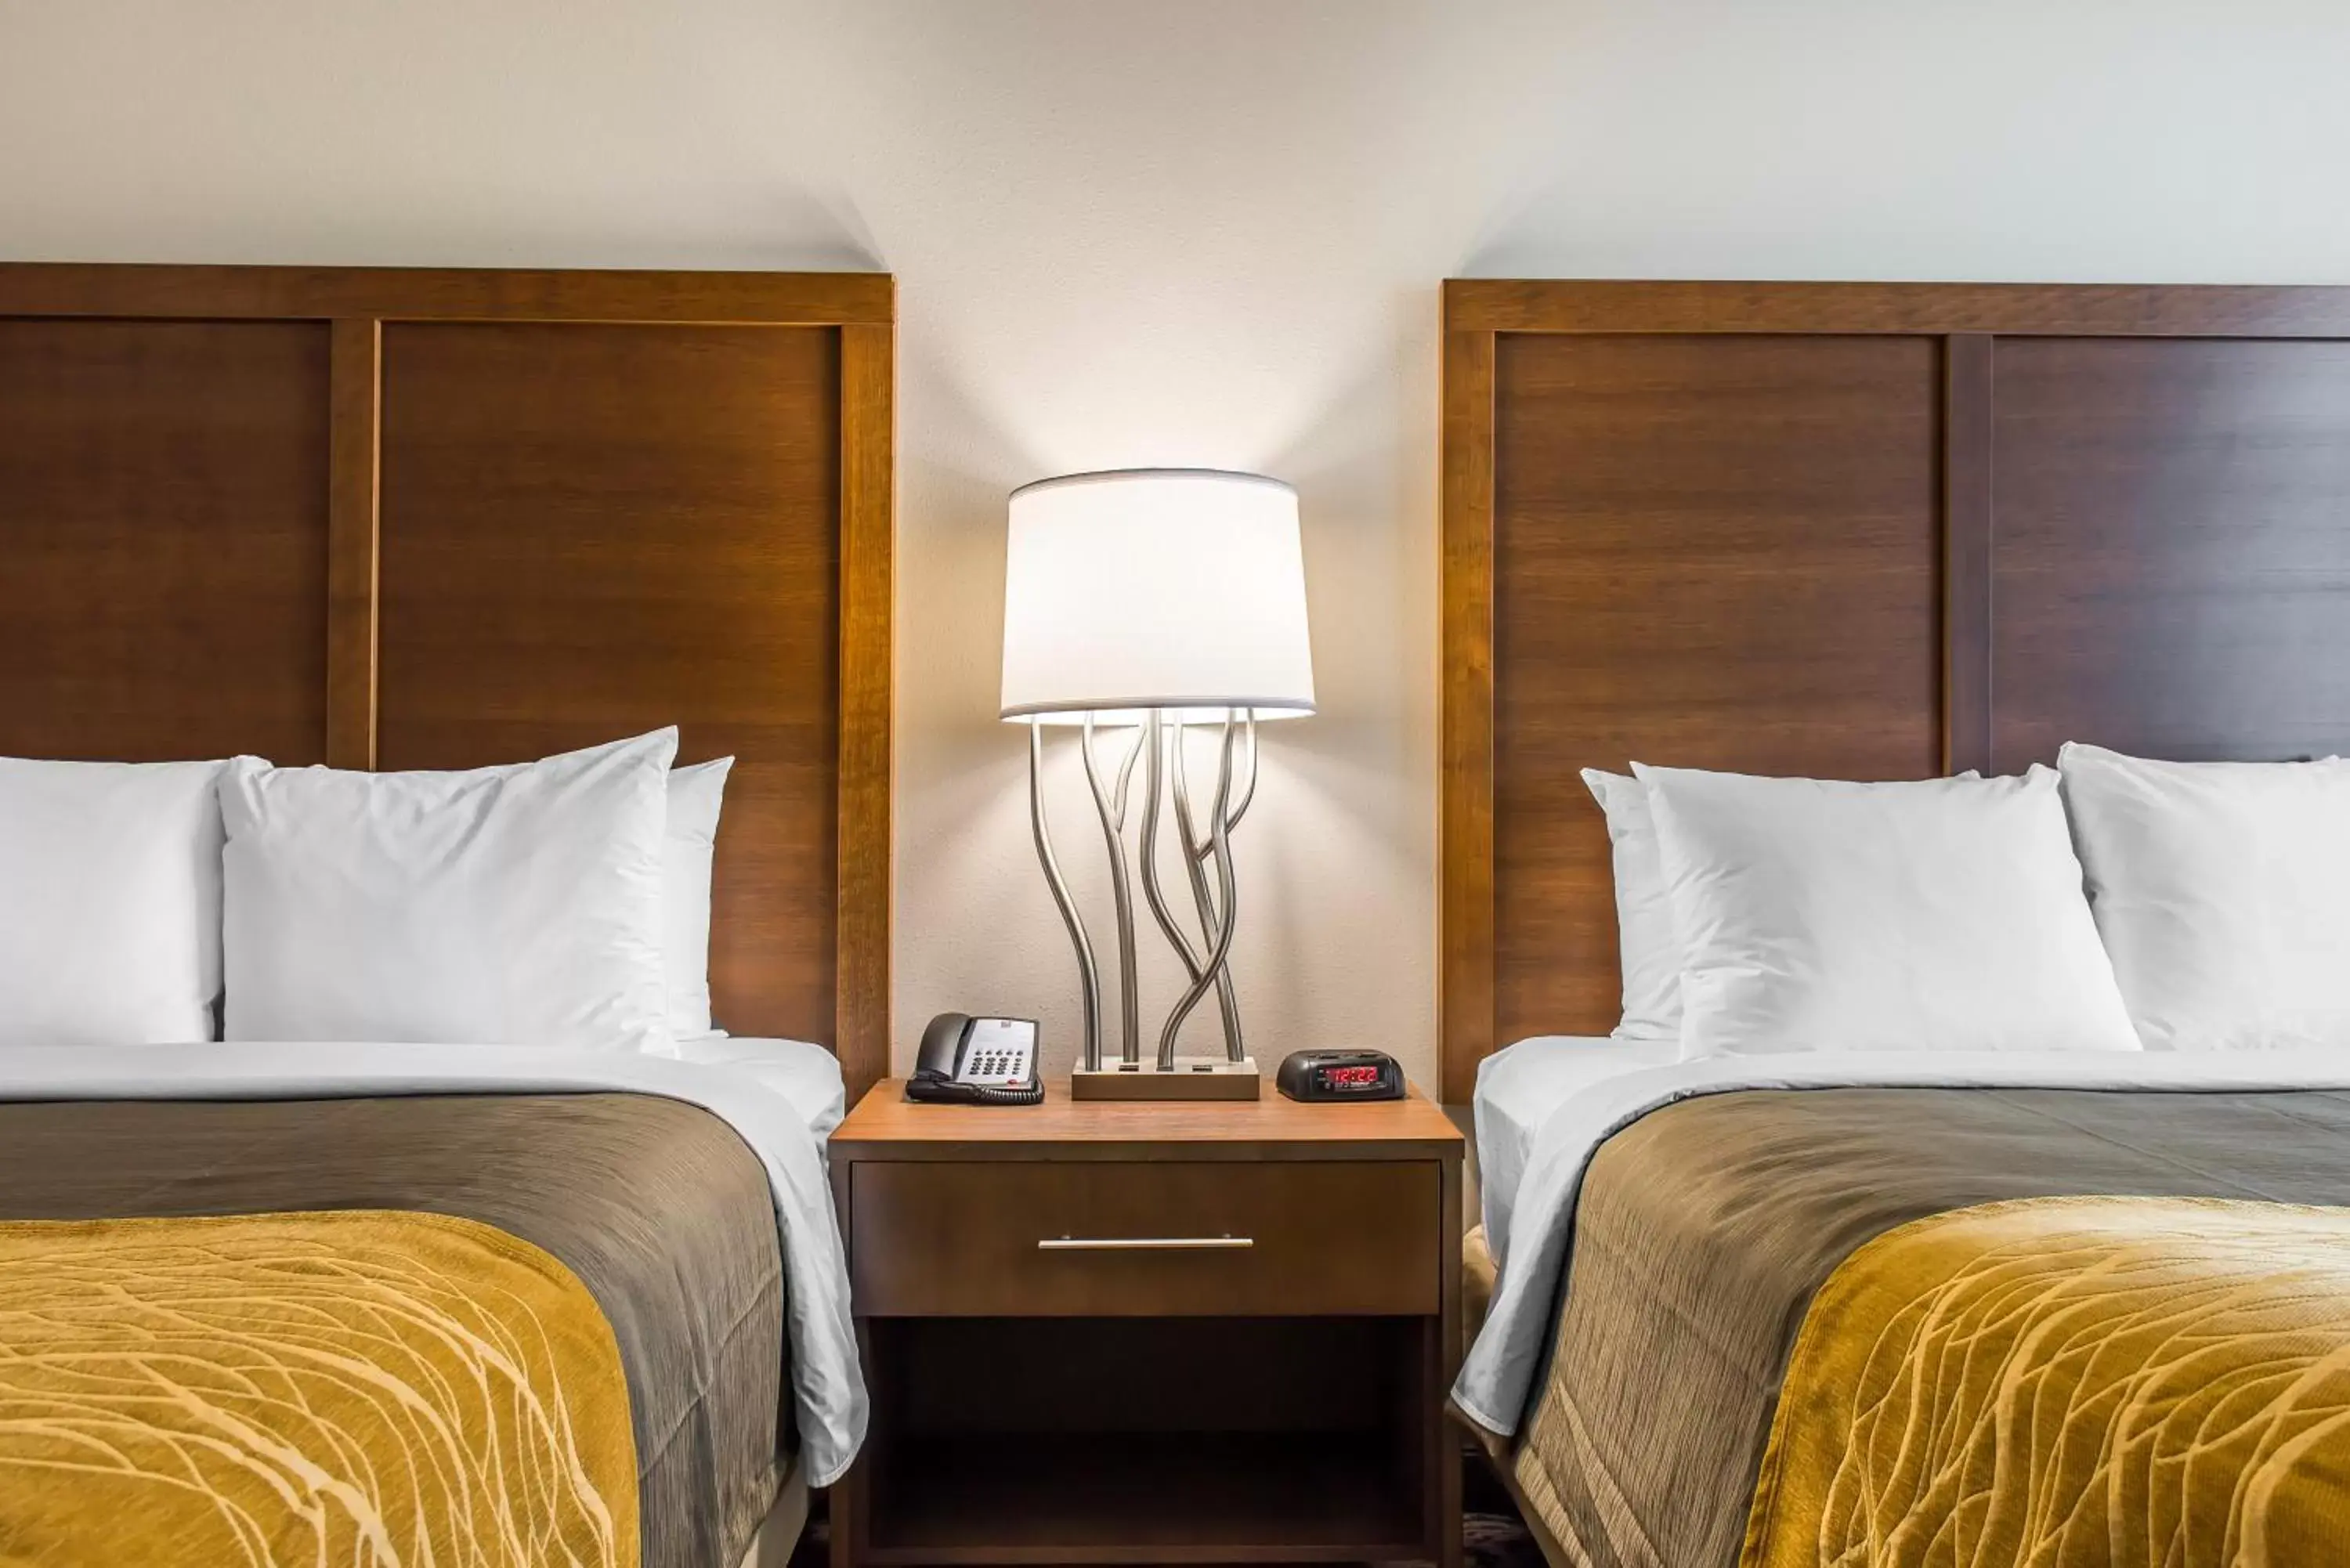 Bedroom, Room Photo in Comfort Inn & Suites Valdosta